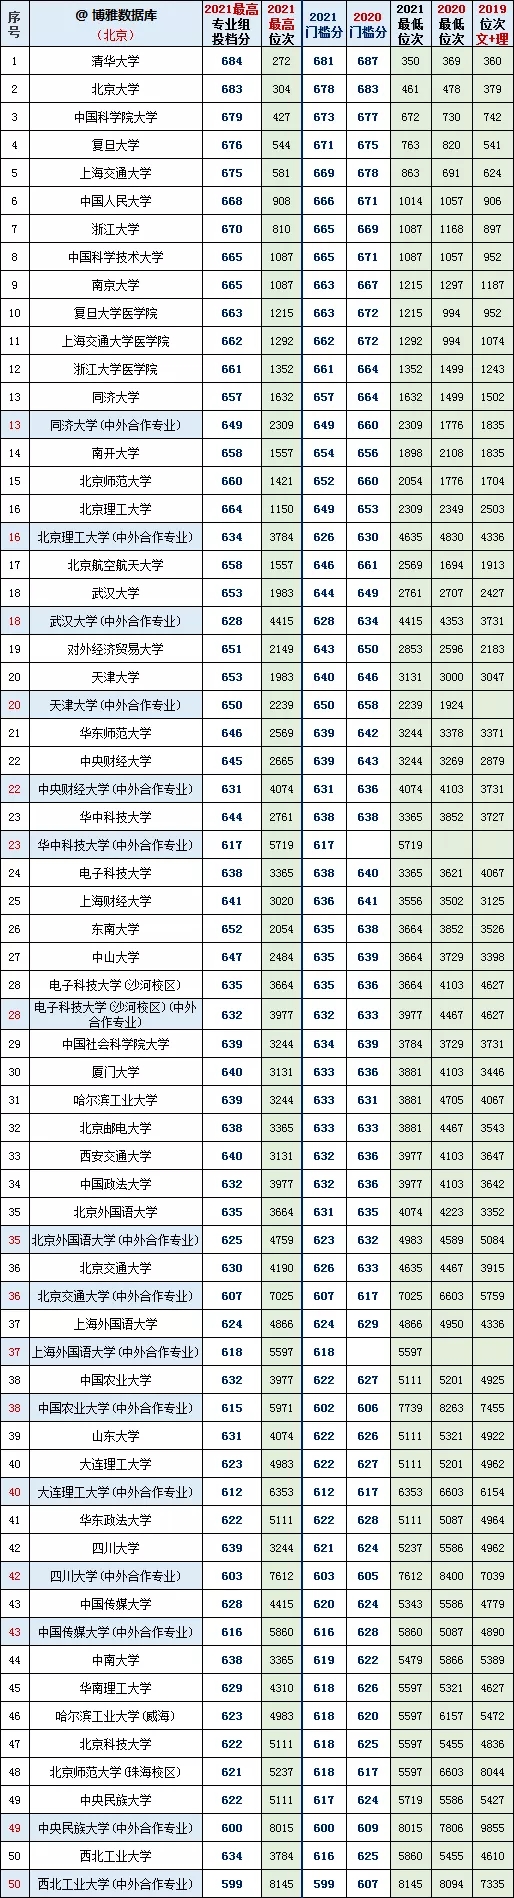 北京本科批最低投档线2020年~2021年对比(图1)